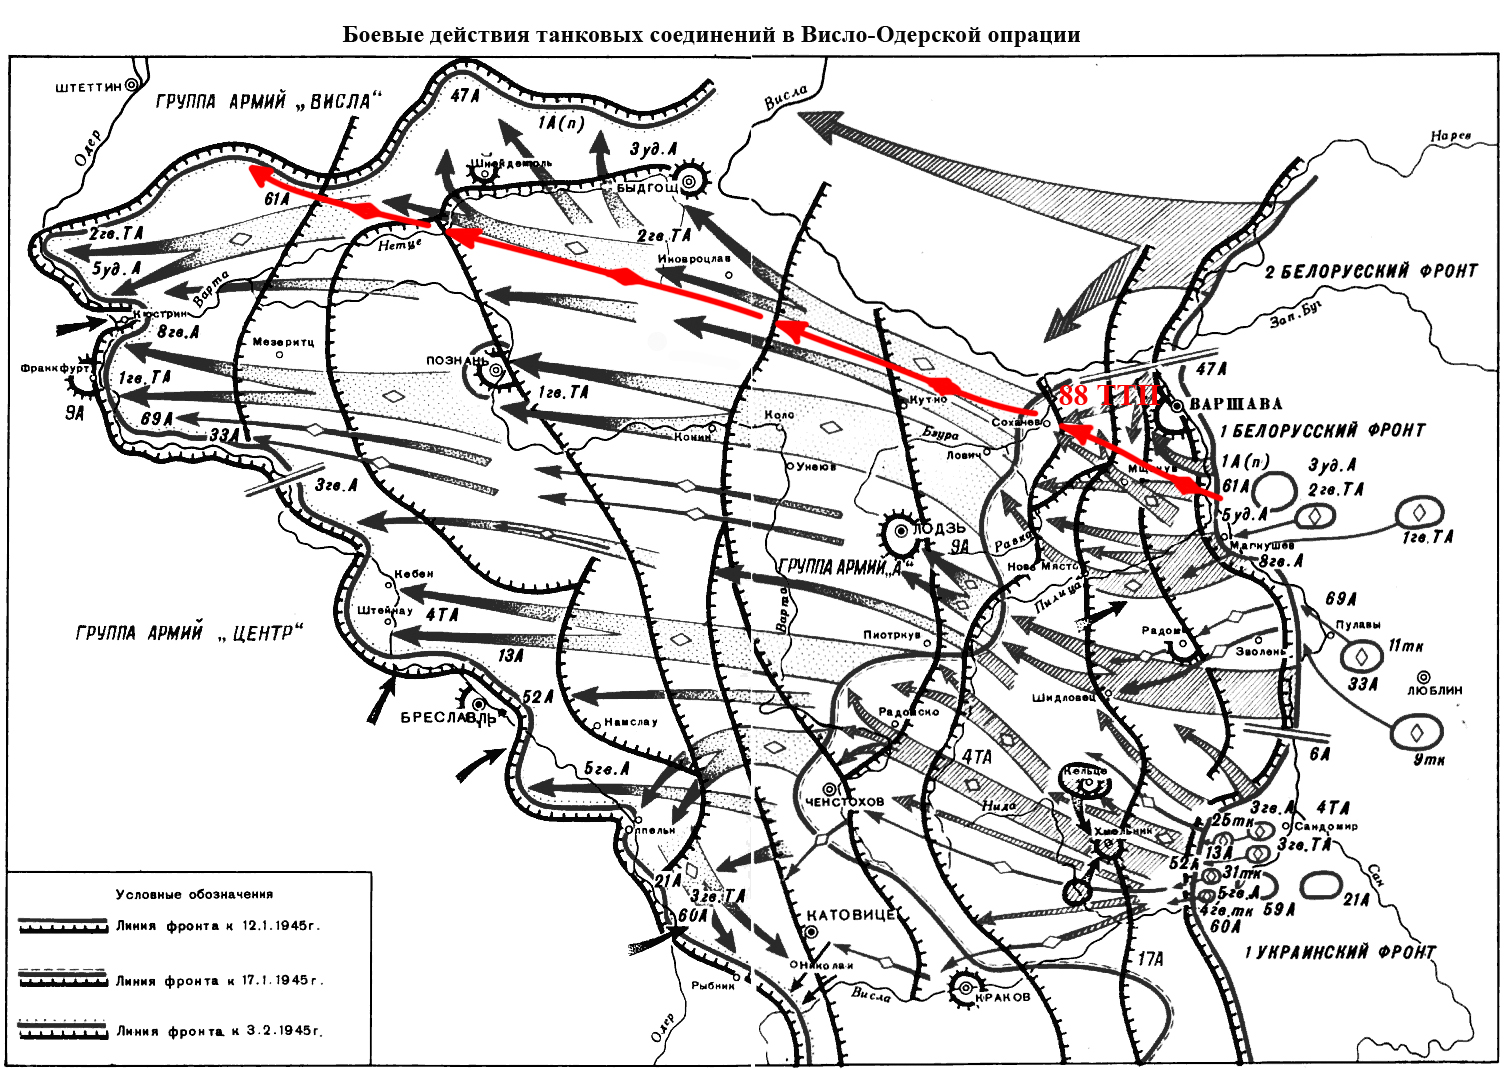 Одерская наступательная операция. Висло Одерская операция 1945. Карта Висло-Одерской операции 1945. Висло-Одерская операция февраль 1945 года. Висло-Одерская операция 2-й белорусский фронт.